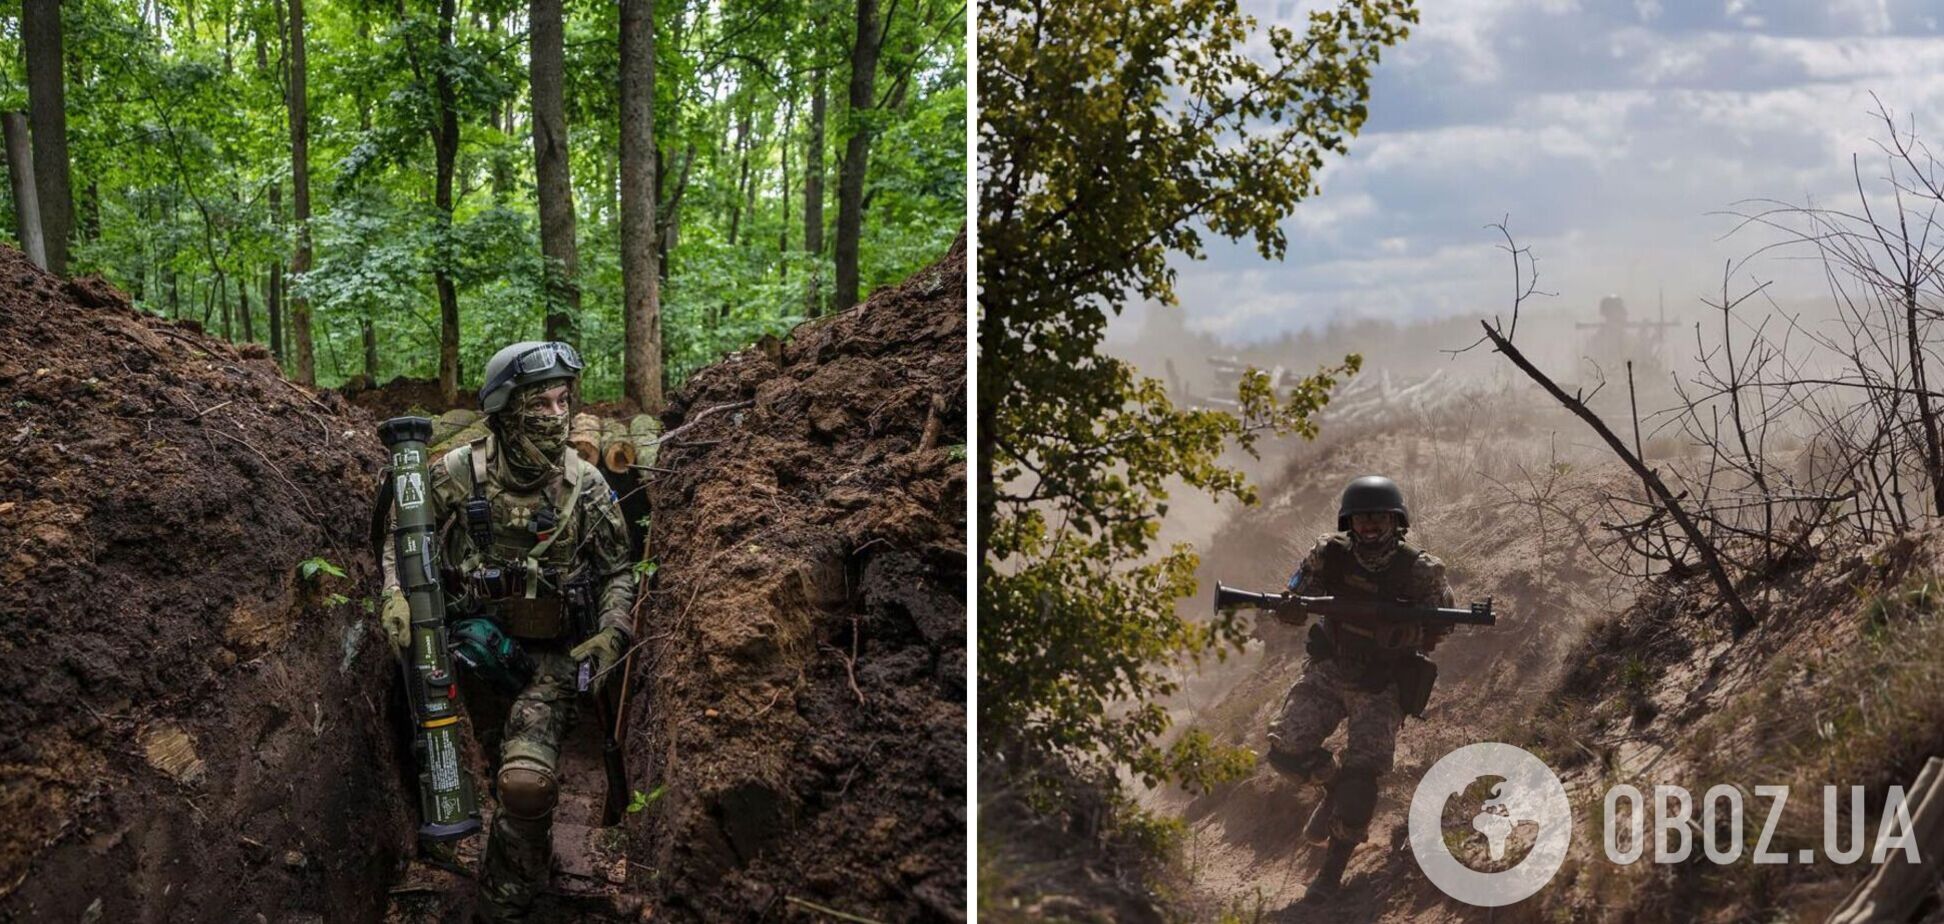 Зеленский показал фото воинов, защищающих Украину: никто не ожидал смелости такого масштаба